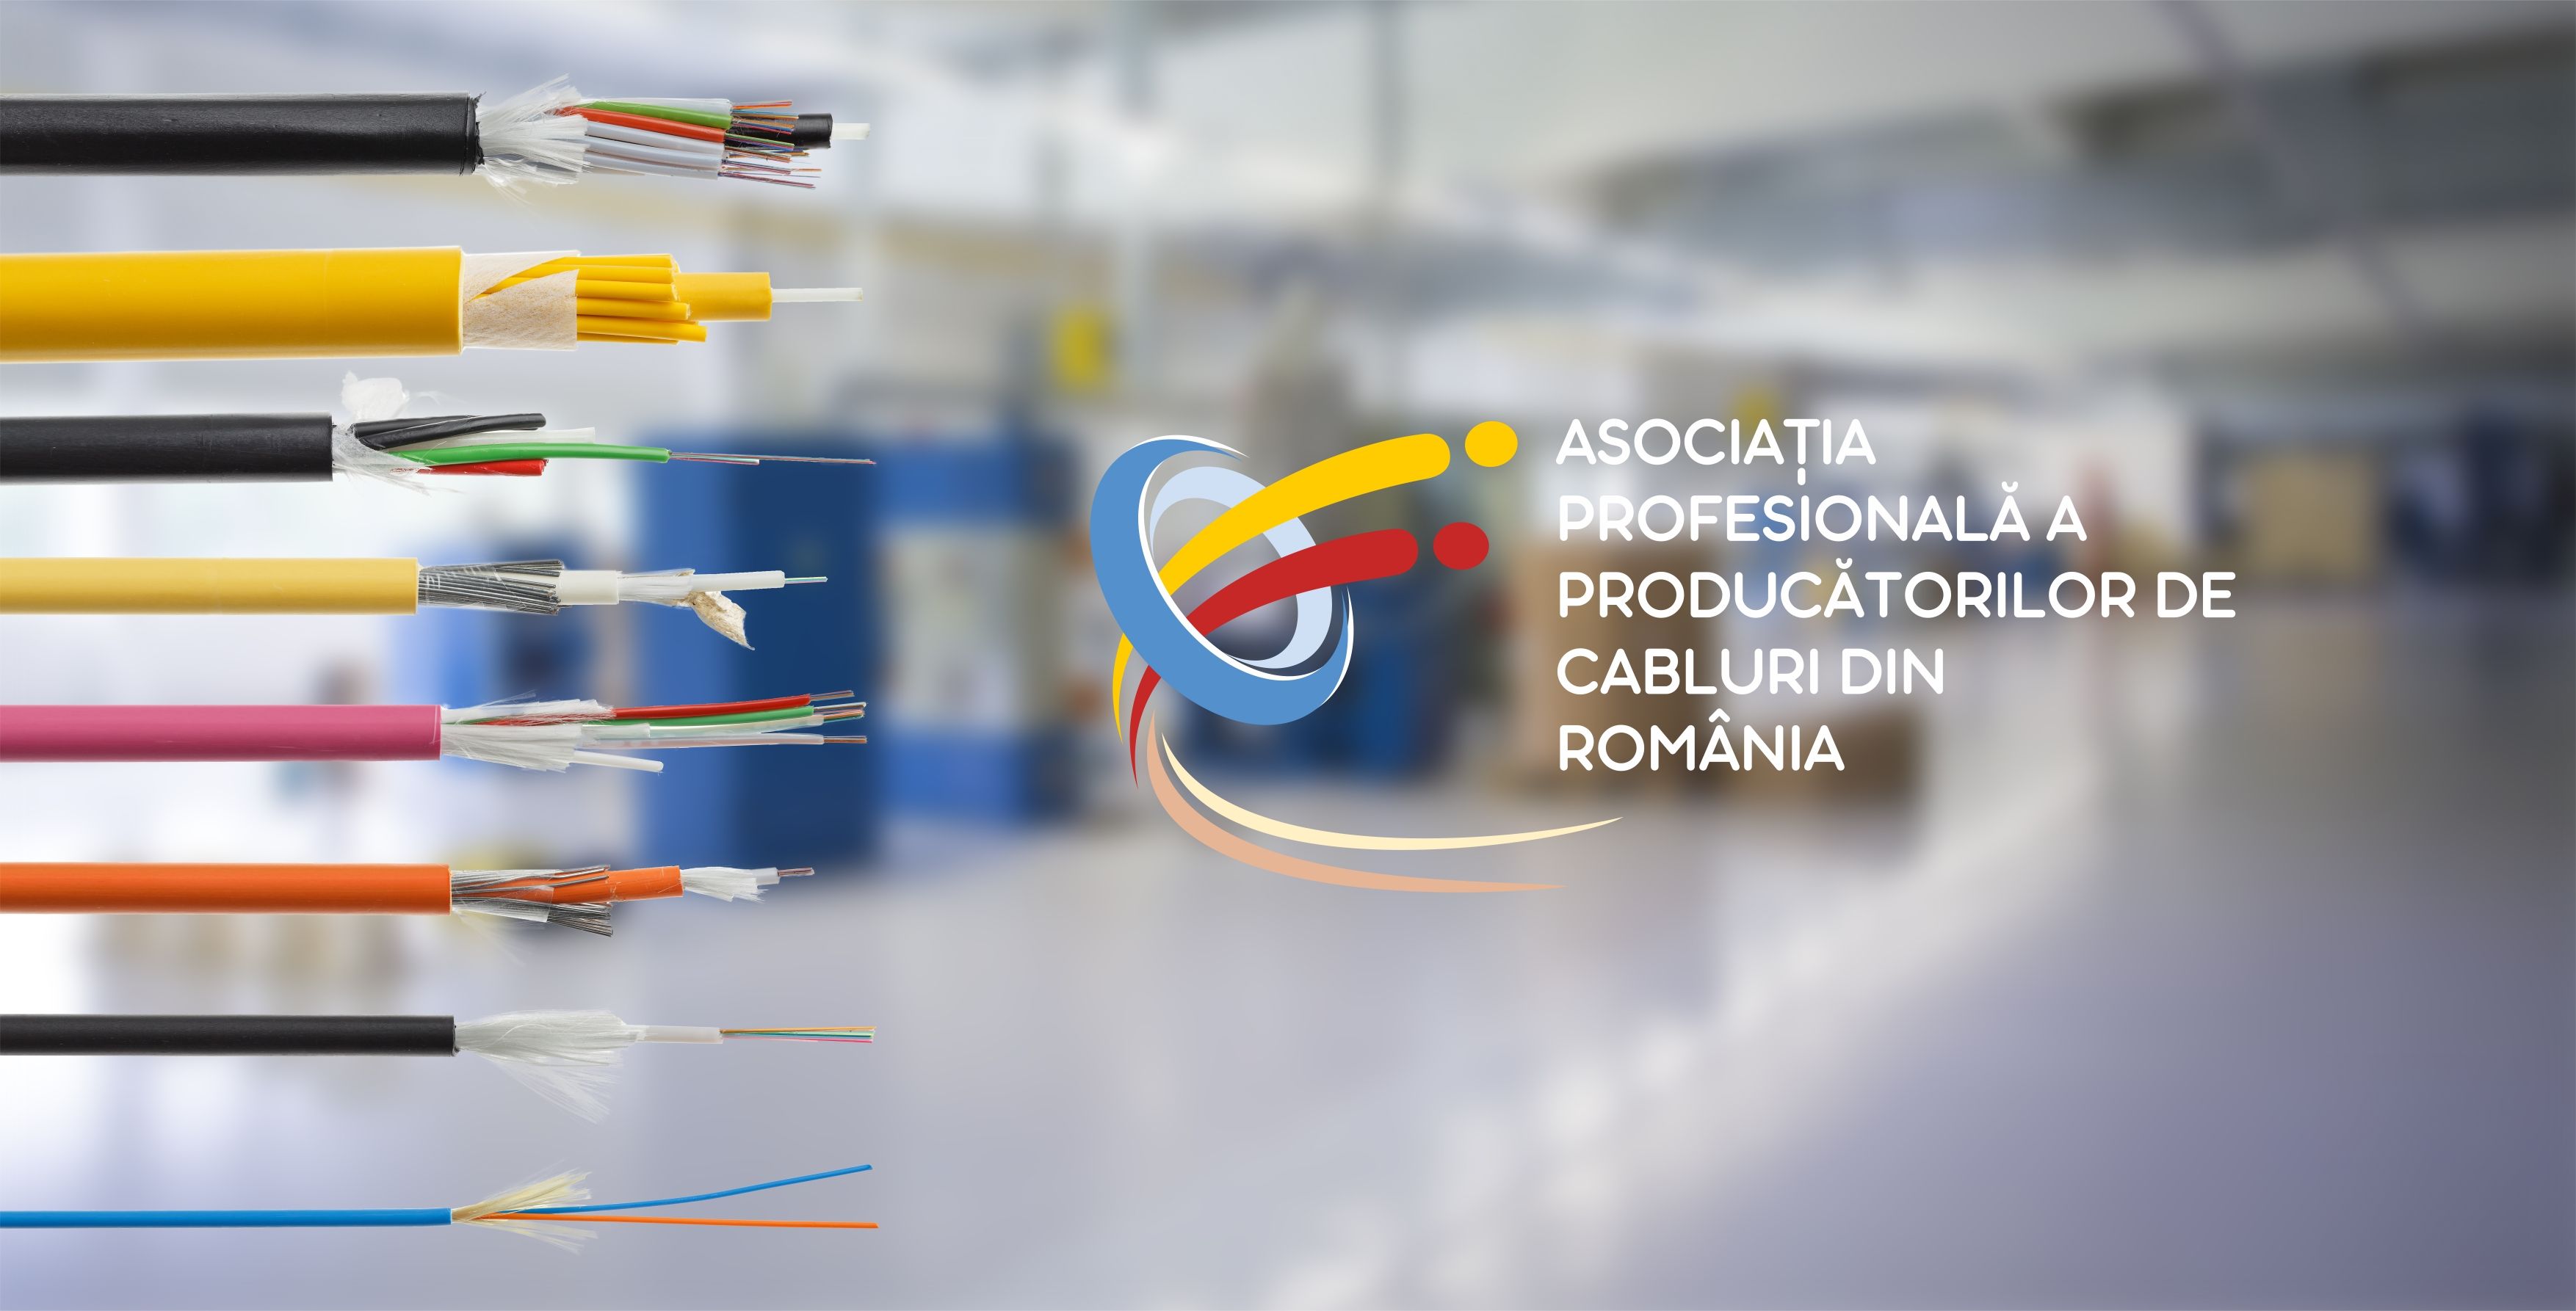 Asociația Profesională a Producătorilor de Cabluri din România încheie un protocol cu Inspecția Muncii dedicat implementării bunelor practici în domeniu